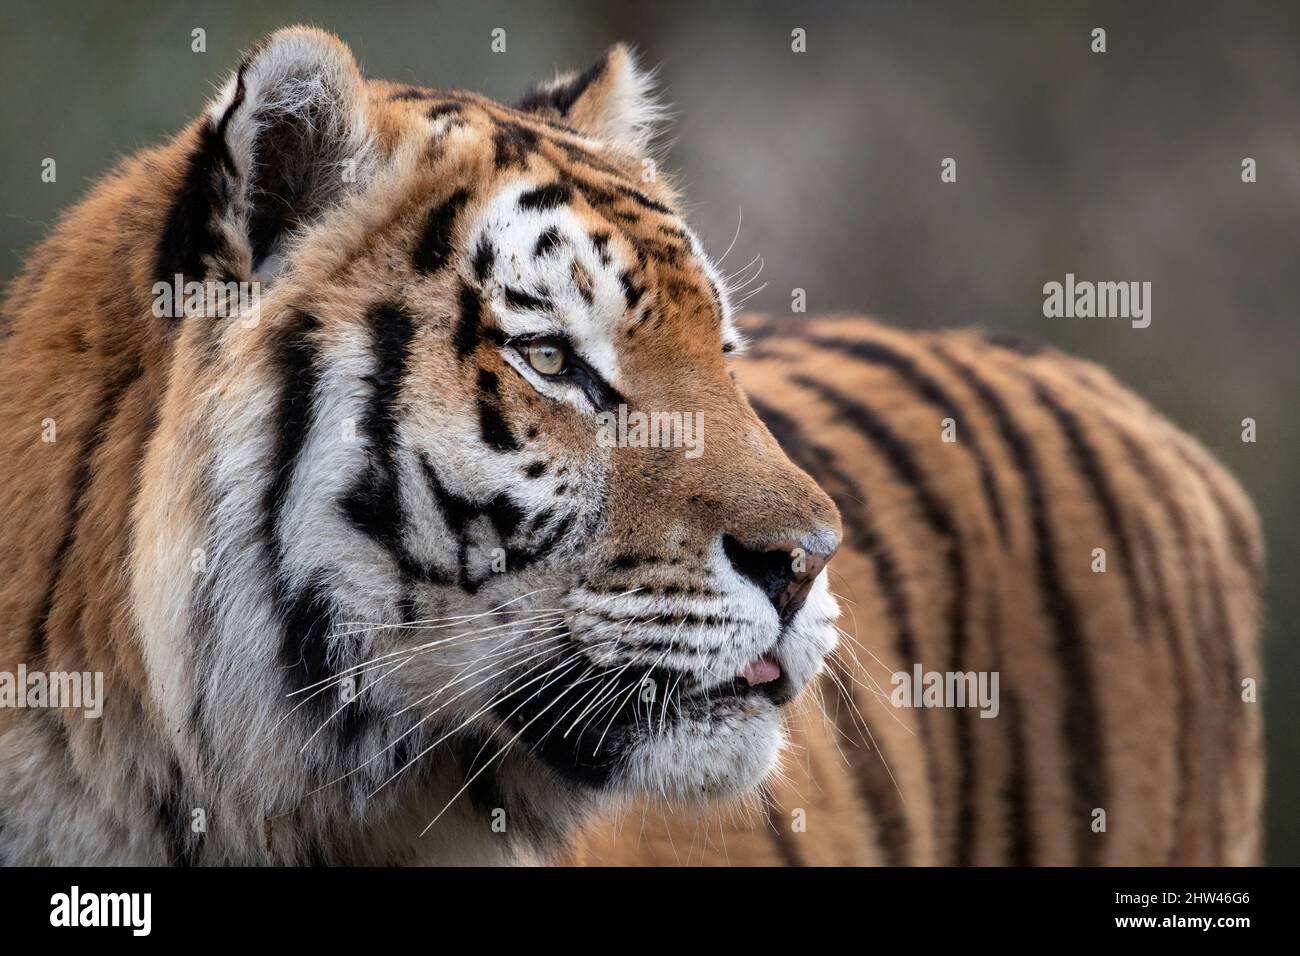 Amur (Siberian) tiger, Panthera tigris altaica Stock Photo